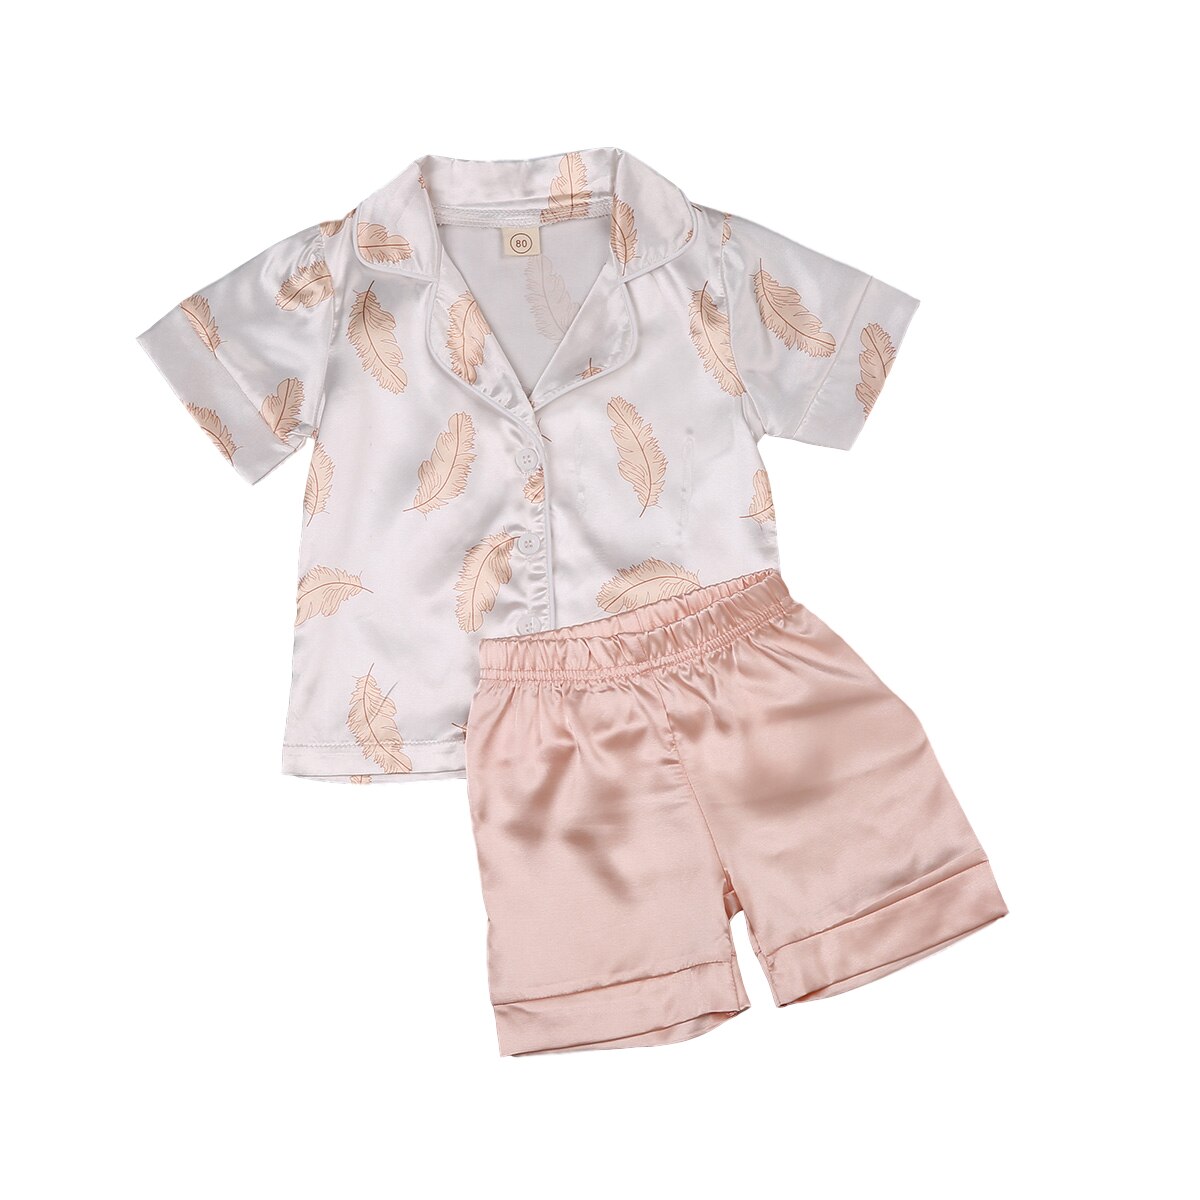 Focusnorm toddler baby kid pige dreng pyjamas sæt sommer 2 stk kortærmet top skjorte med knap ned + shorts 2 stk nattøj sæt